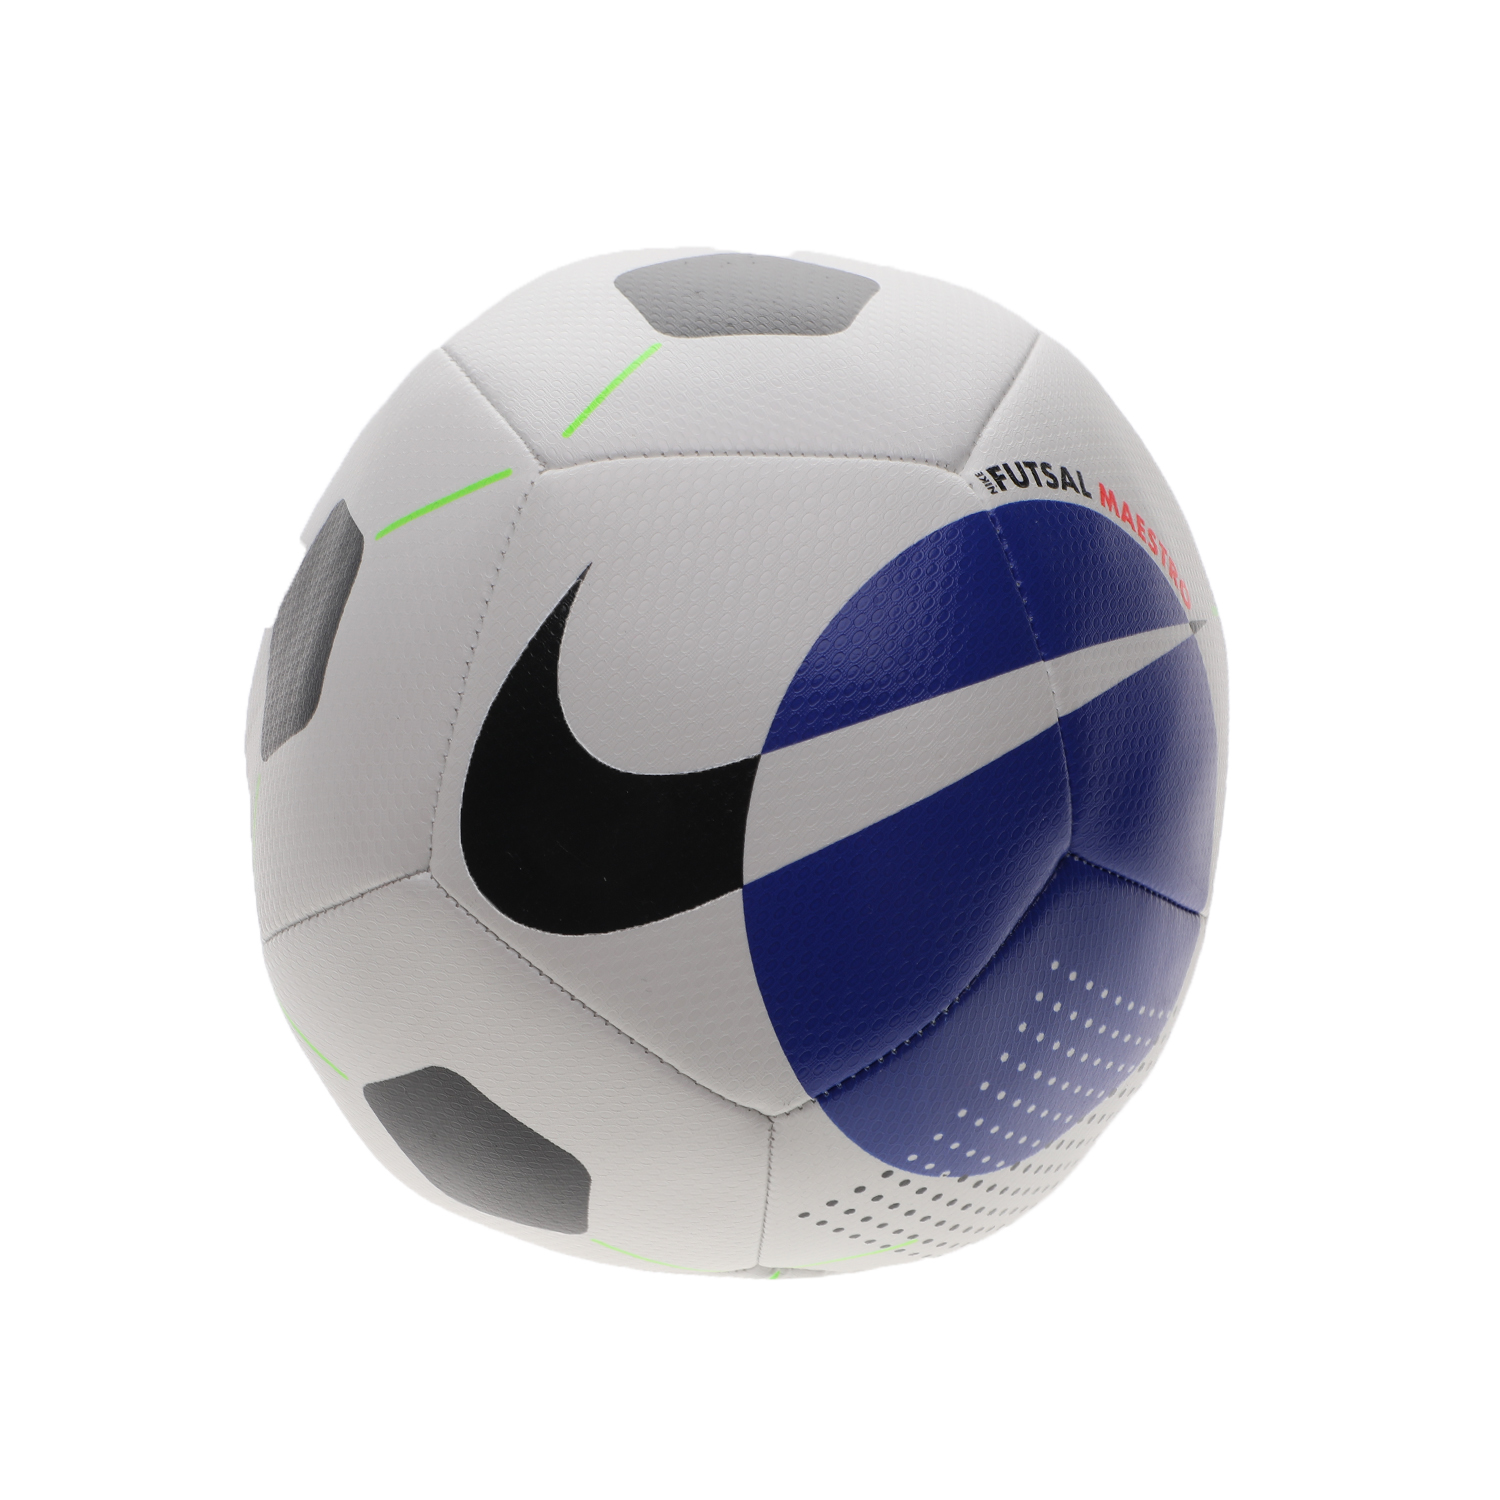 Ανδρικά/Αξεσουάρ/Αθλητικά Είδη/Μπάλες NIKE - Μπάλα ποδοσφαίρου NIKE FUTSAL MAESTRO λευκή